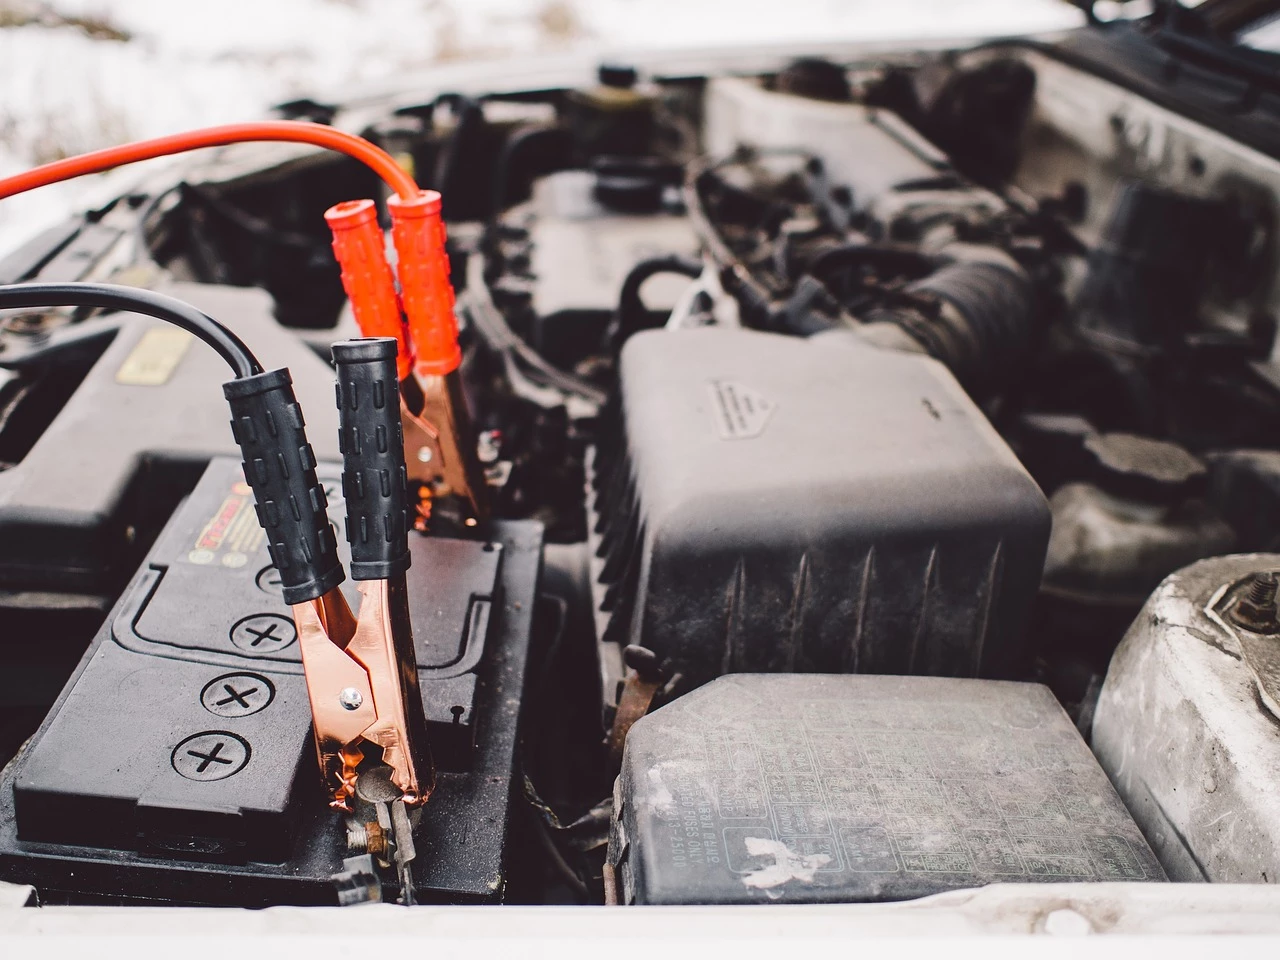 Wintertipps: Batterie im Auto: Warm halten und Kurzstrecken meiden